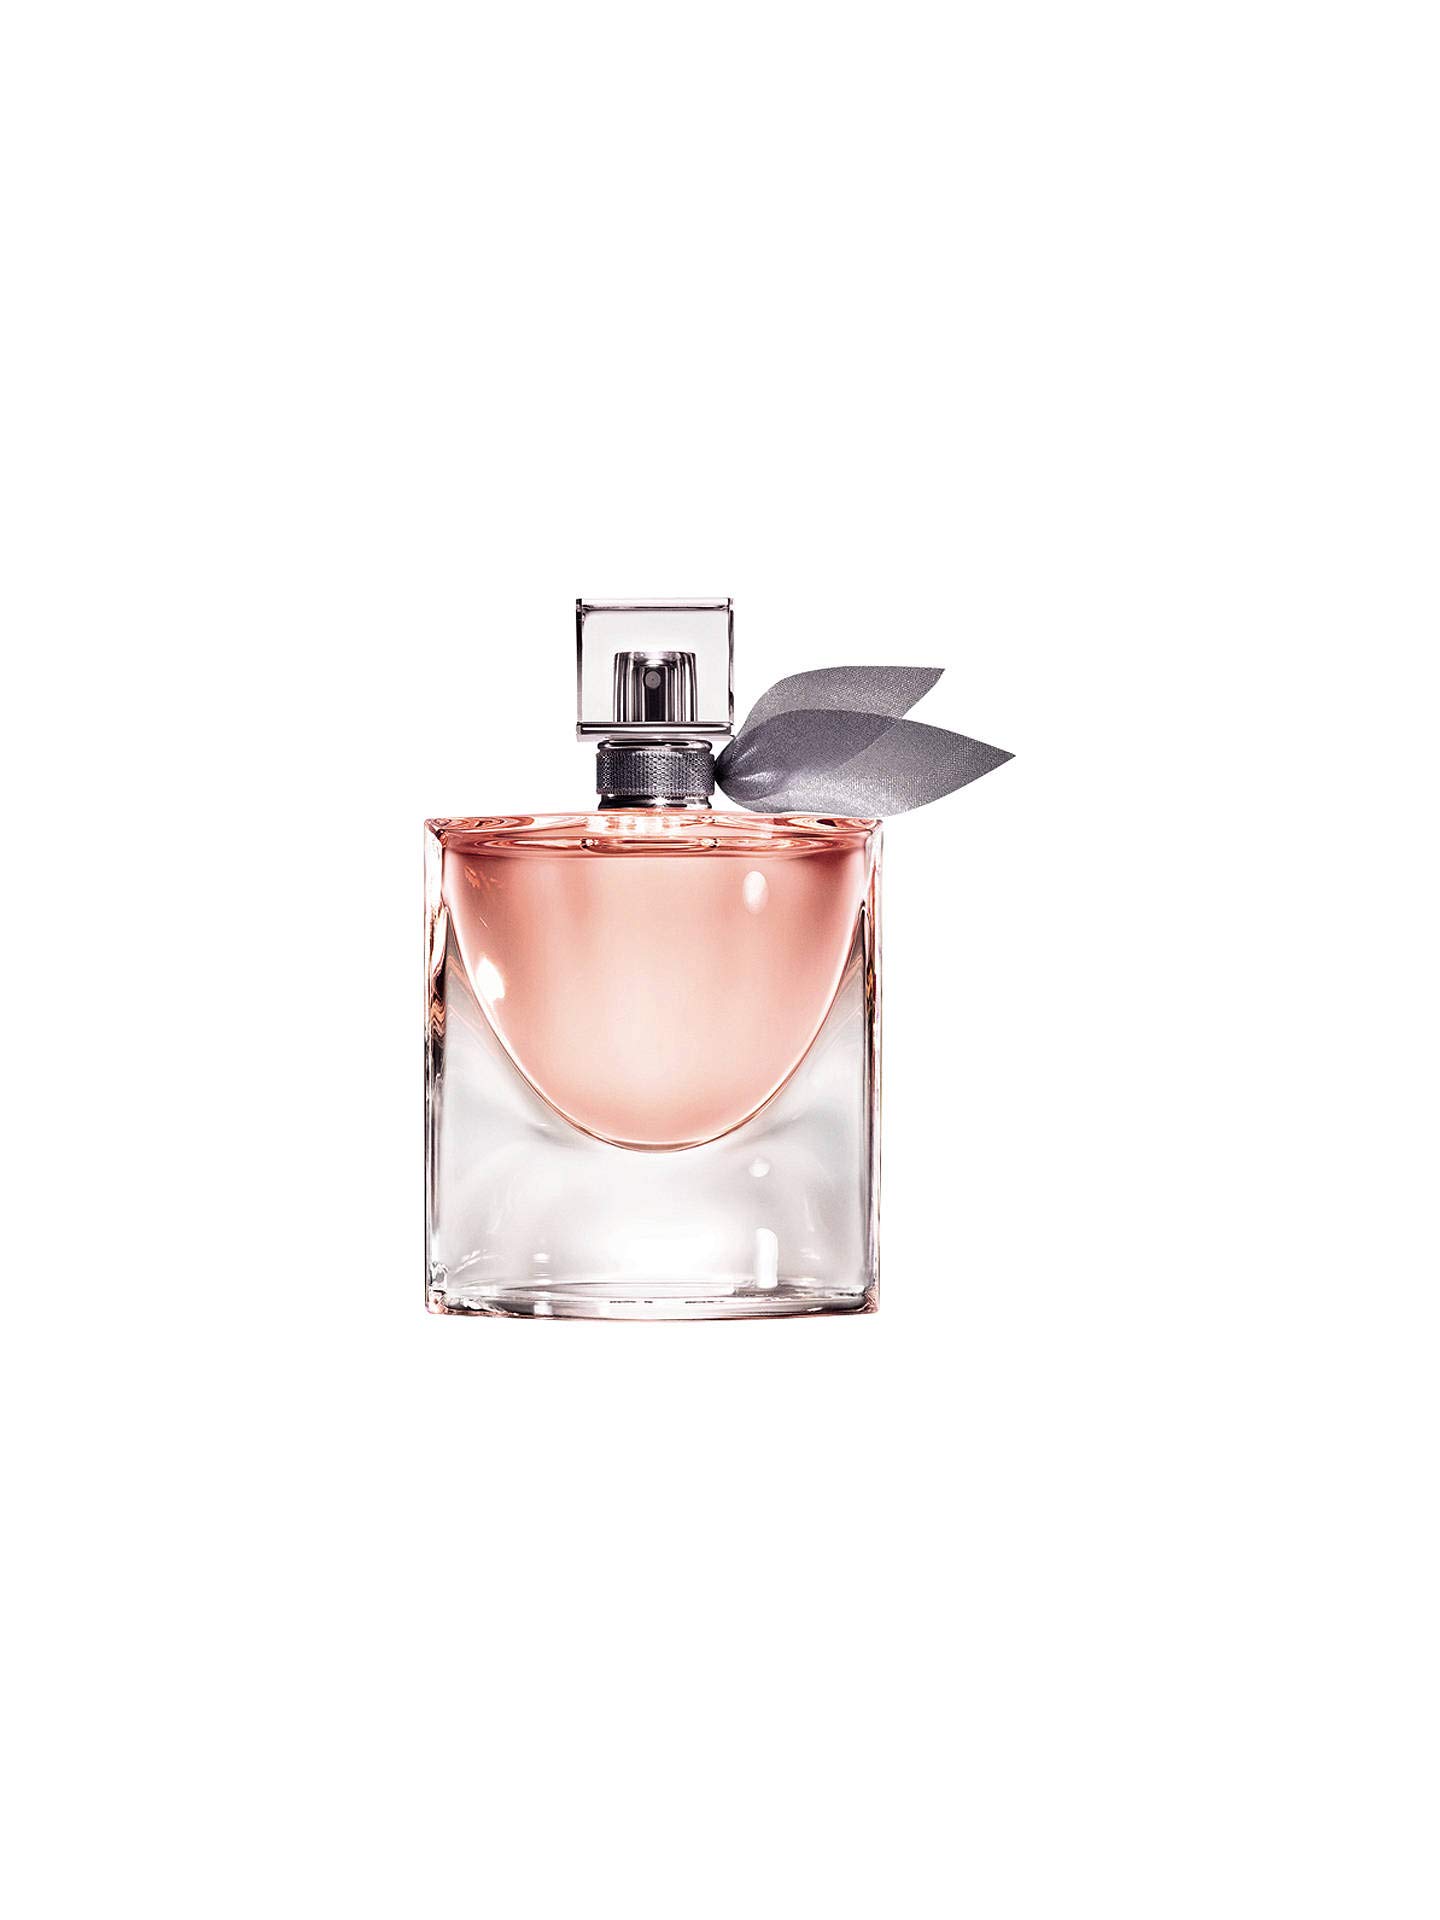 Lancome Lancome La Vie Est Belle Perfume Eau De Parfum 30ml 1 Oz Sealed Authentic, 10 Oz